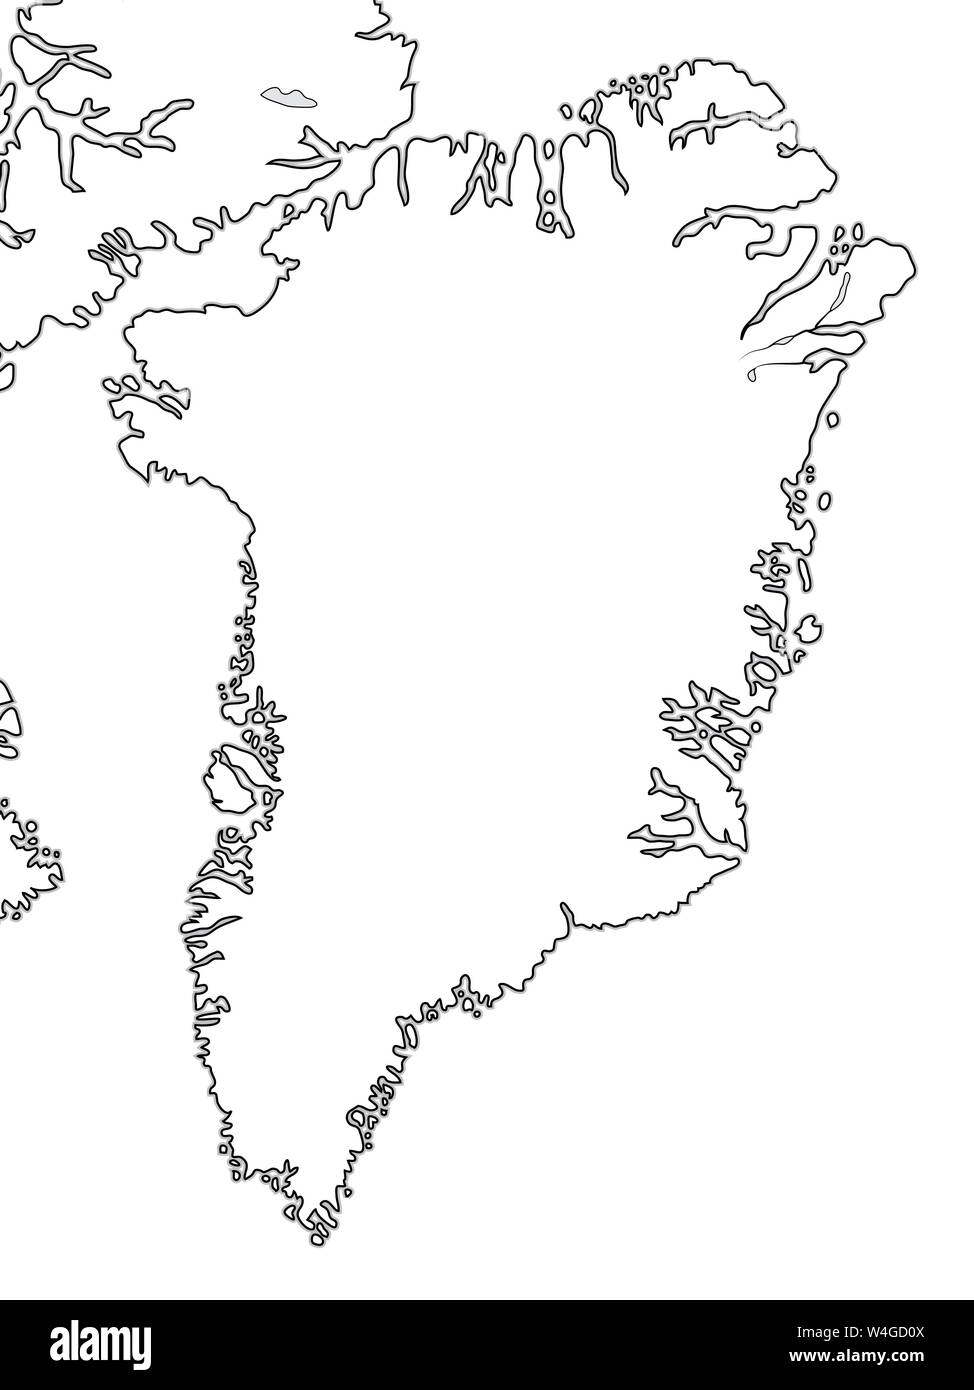 Welt Karte von Grönland: Grönland, Arktis, Atlantik. Geographische Chart mit ozeanischer Küste und Inseln. Stockfoto